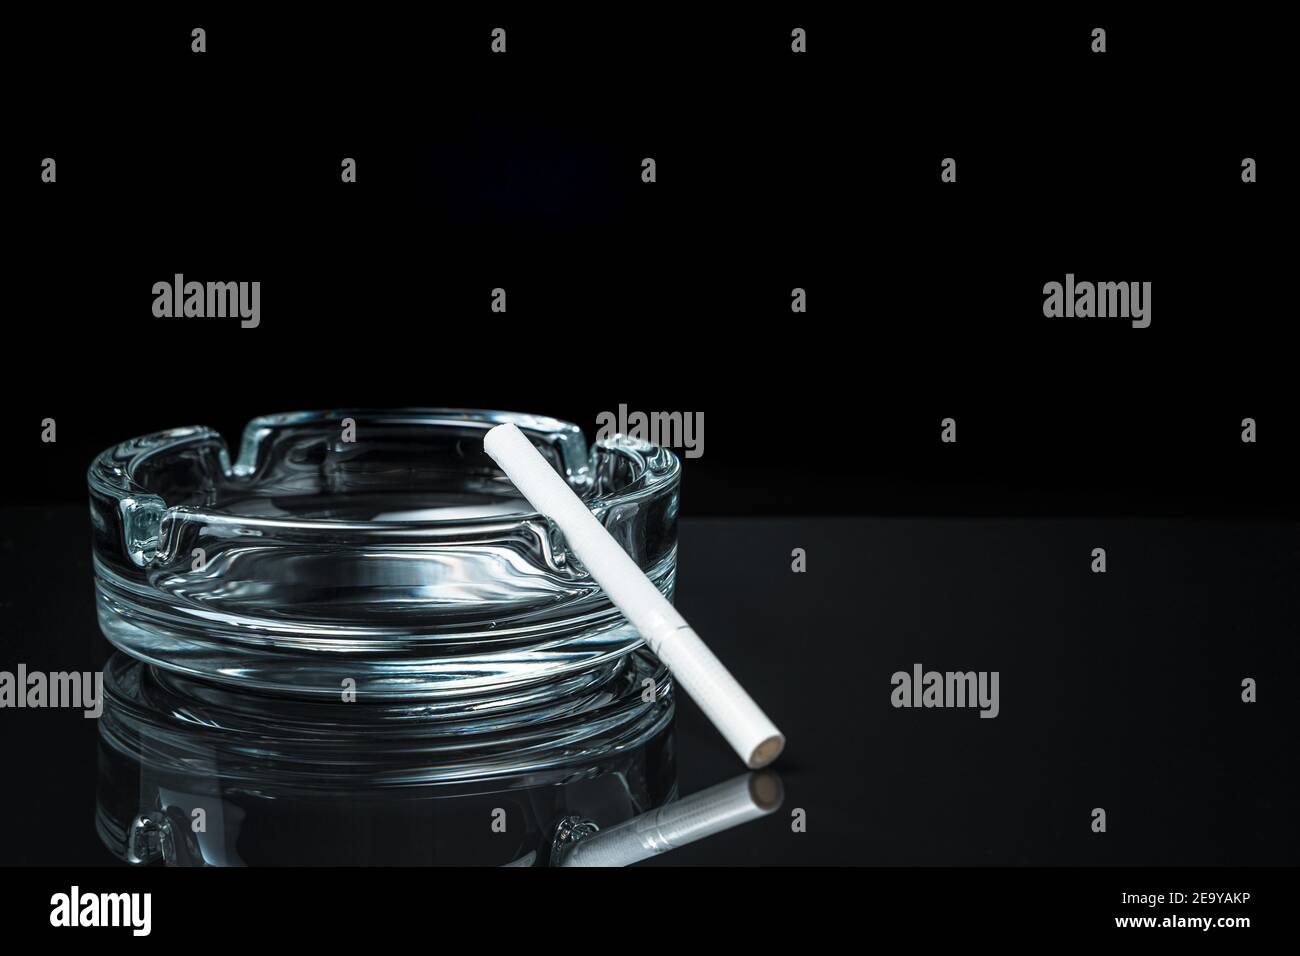 Zigarette im Aschenbecher rauchen - Stockfotografie: lizenzfreie Fotos ©  kelpfish 51939459